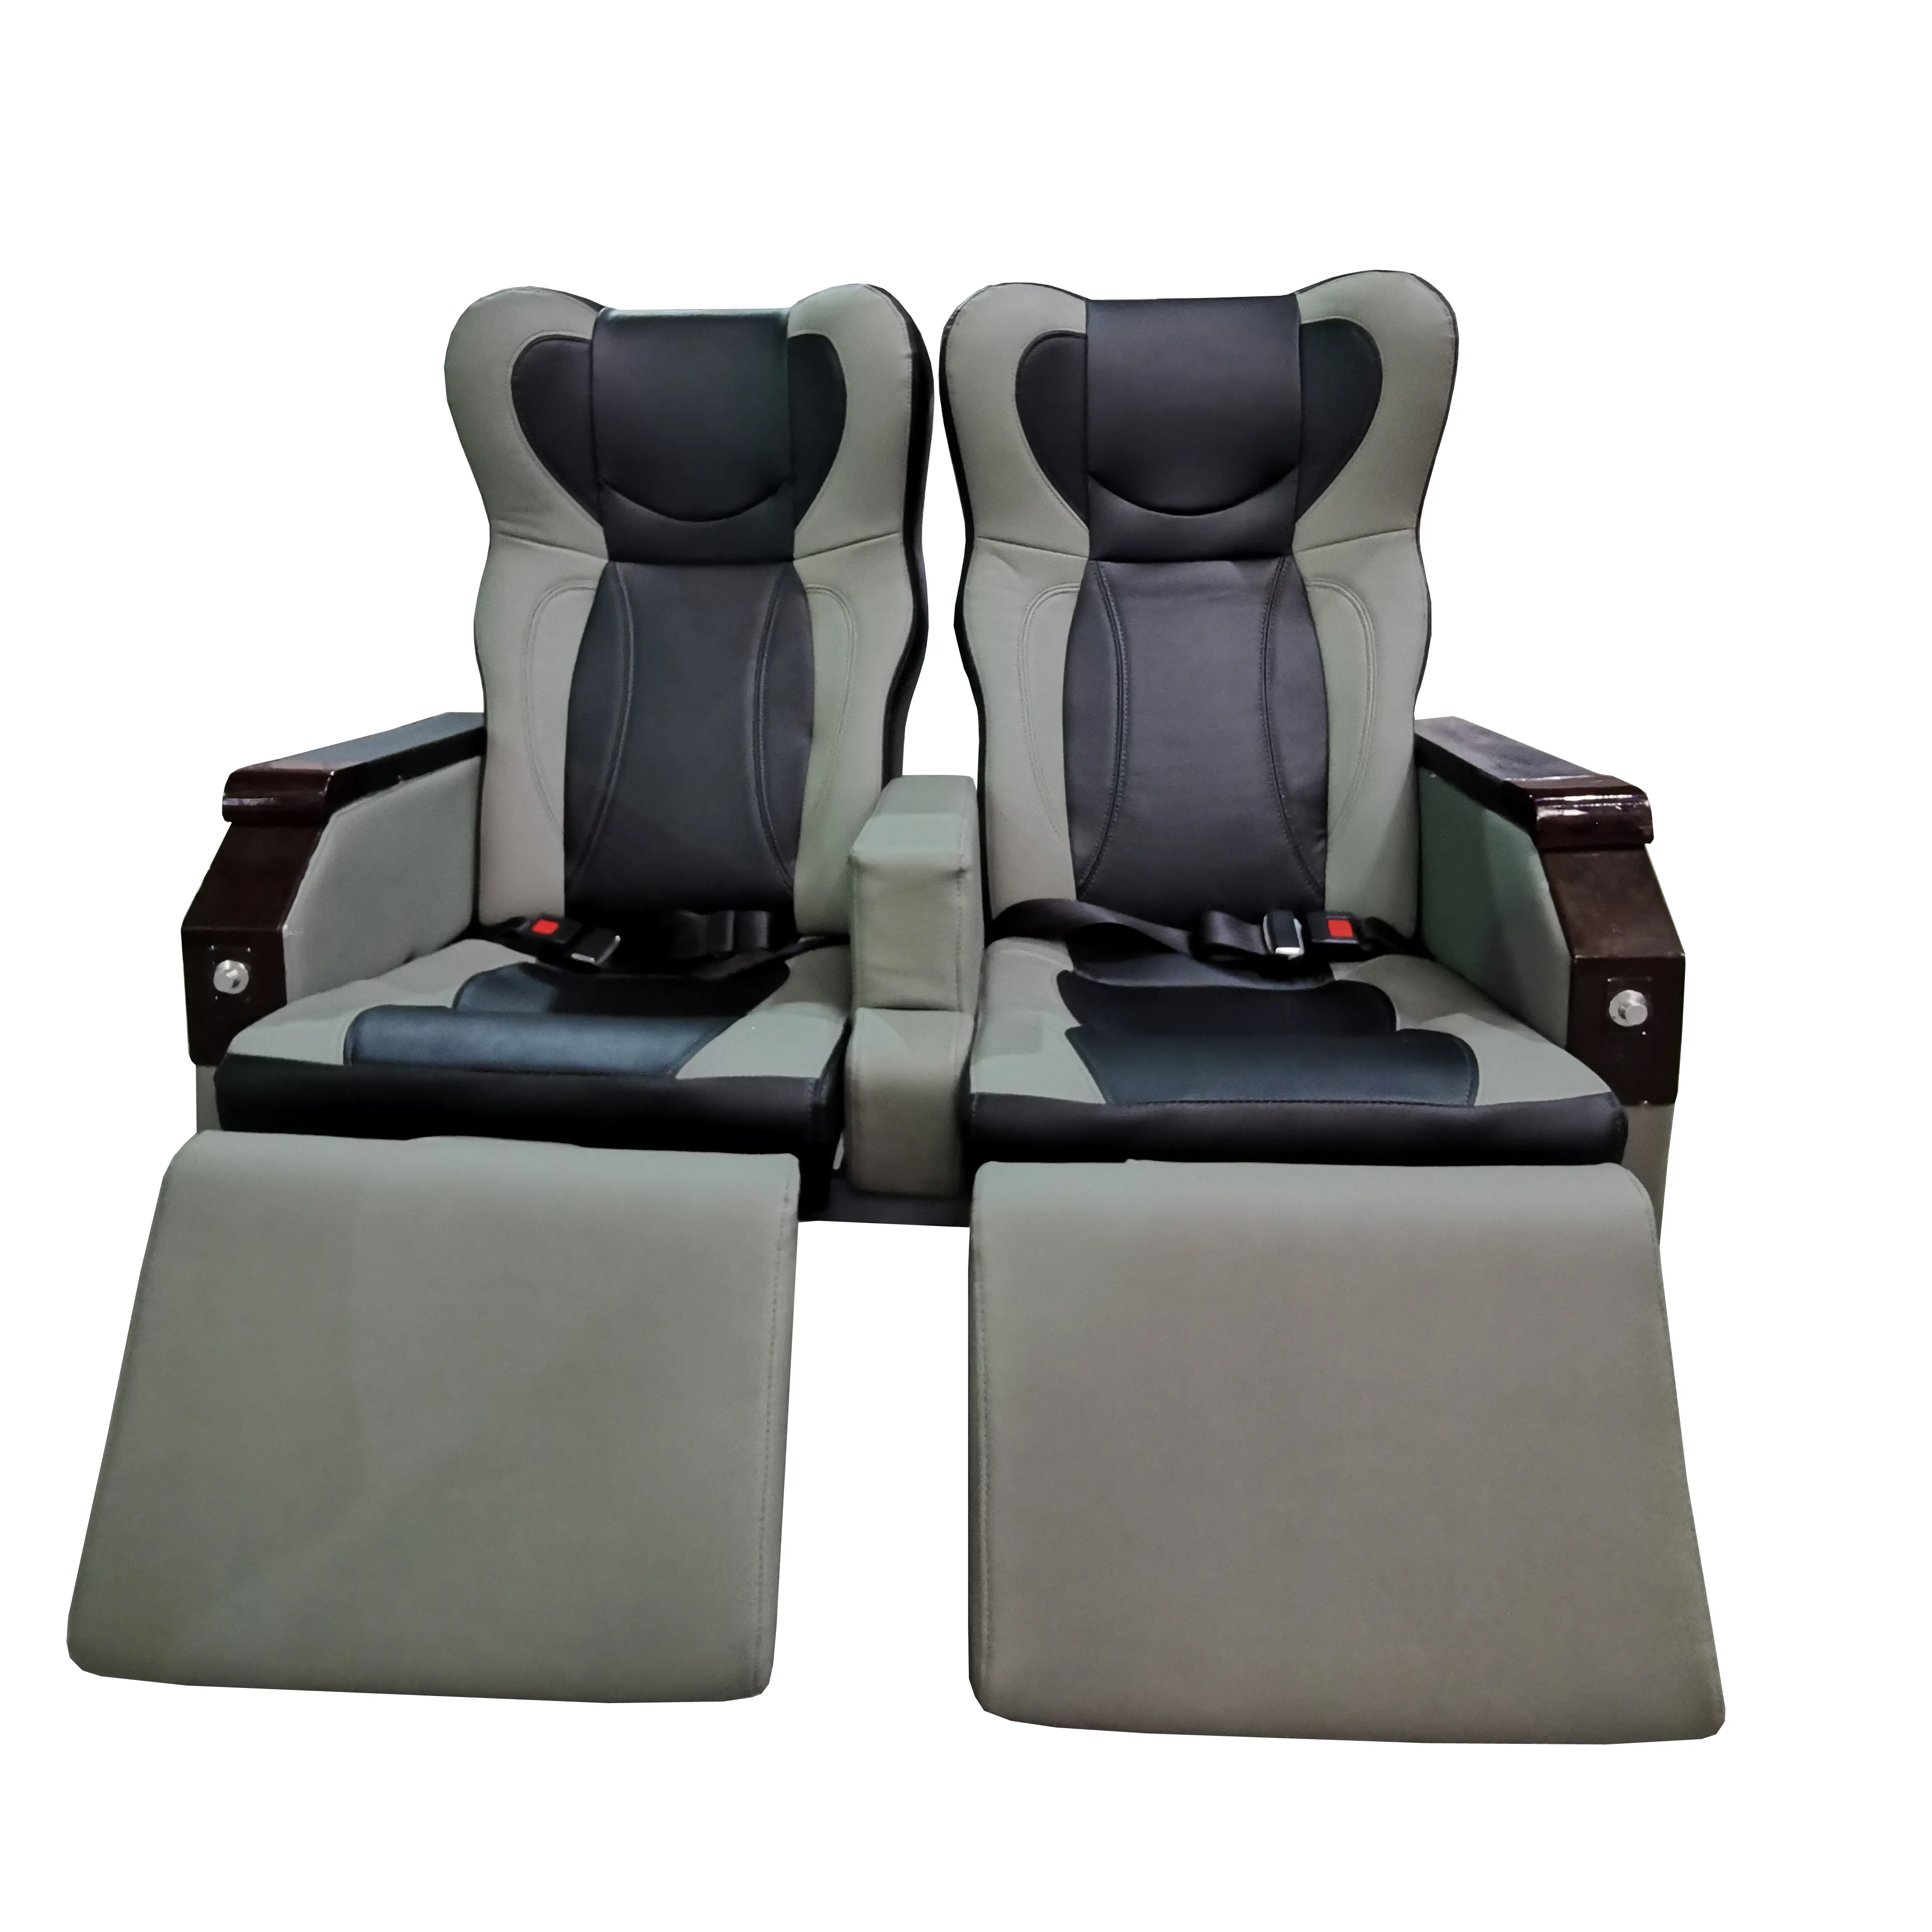 Asiento de lujo para coche de negocios, asiento para furgoneta, autobús, con airbag, soporte de pie, al mejor precio